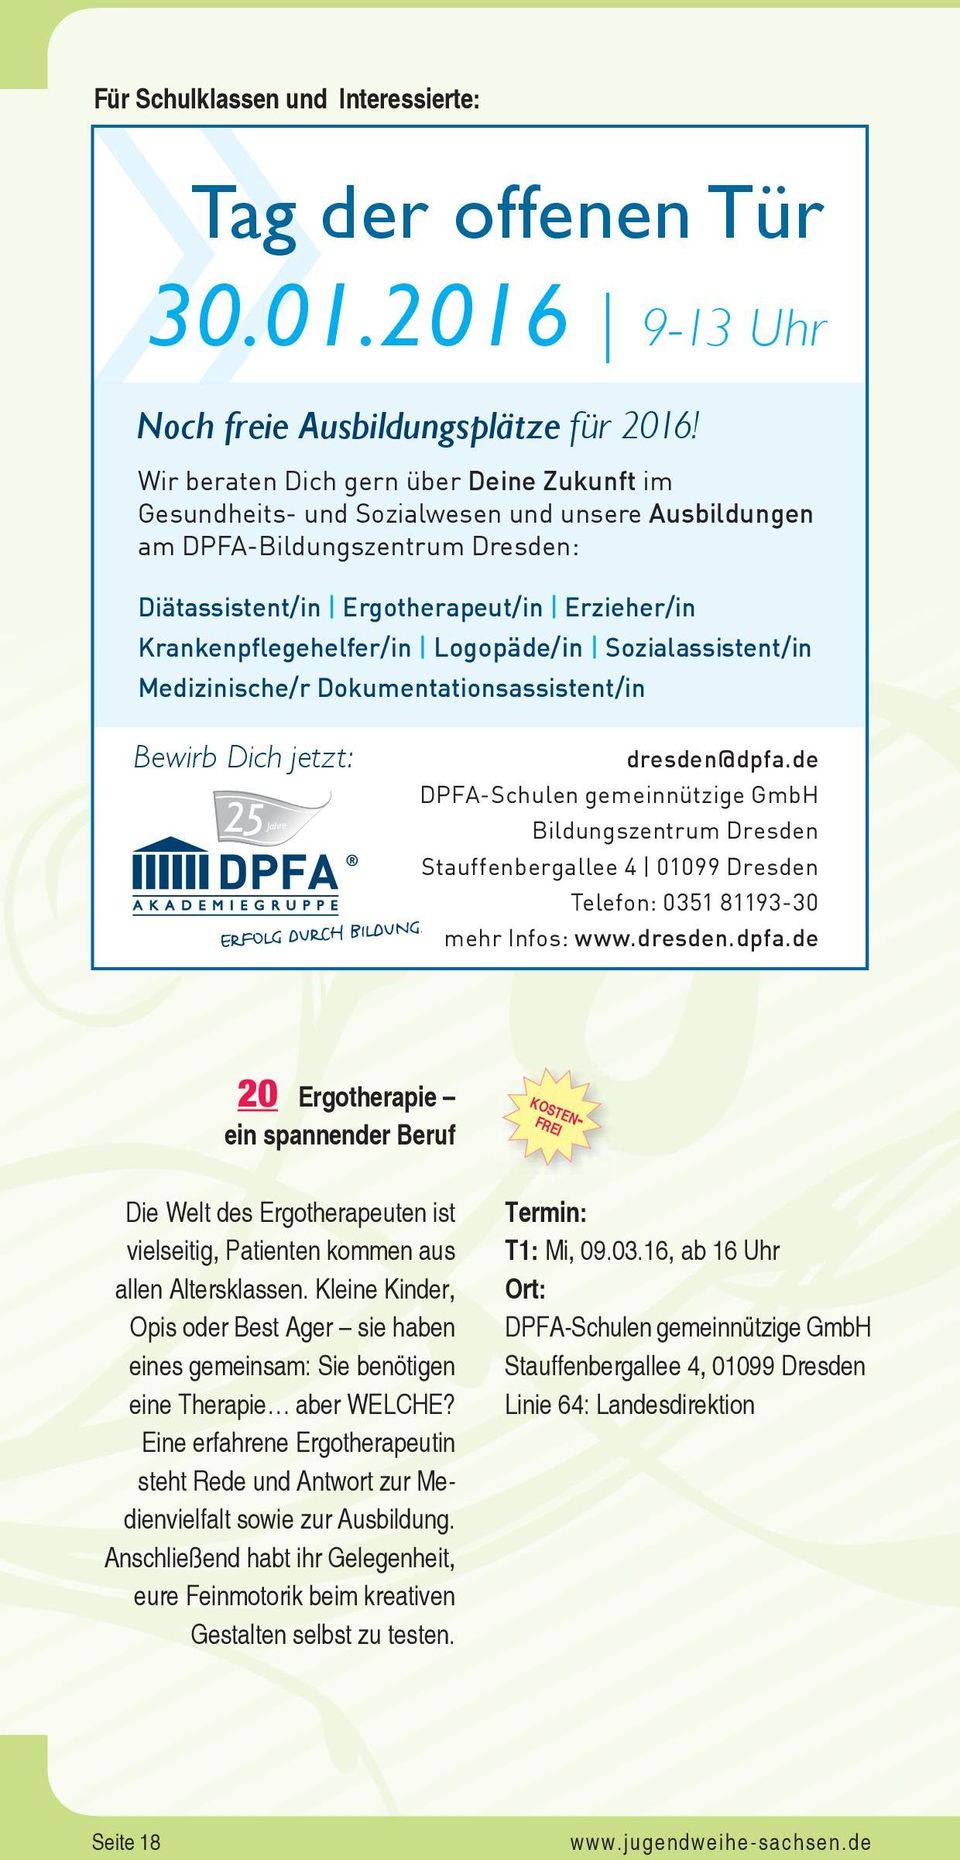 Logopäde/in Sozialassistent/in Medizinische/r Dokumentationsassistent/in Bewirb Dich jetzt: Jahre dresden@dpfa.